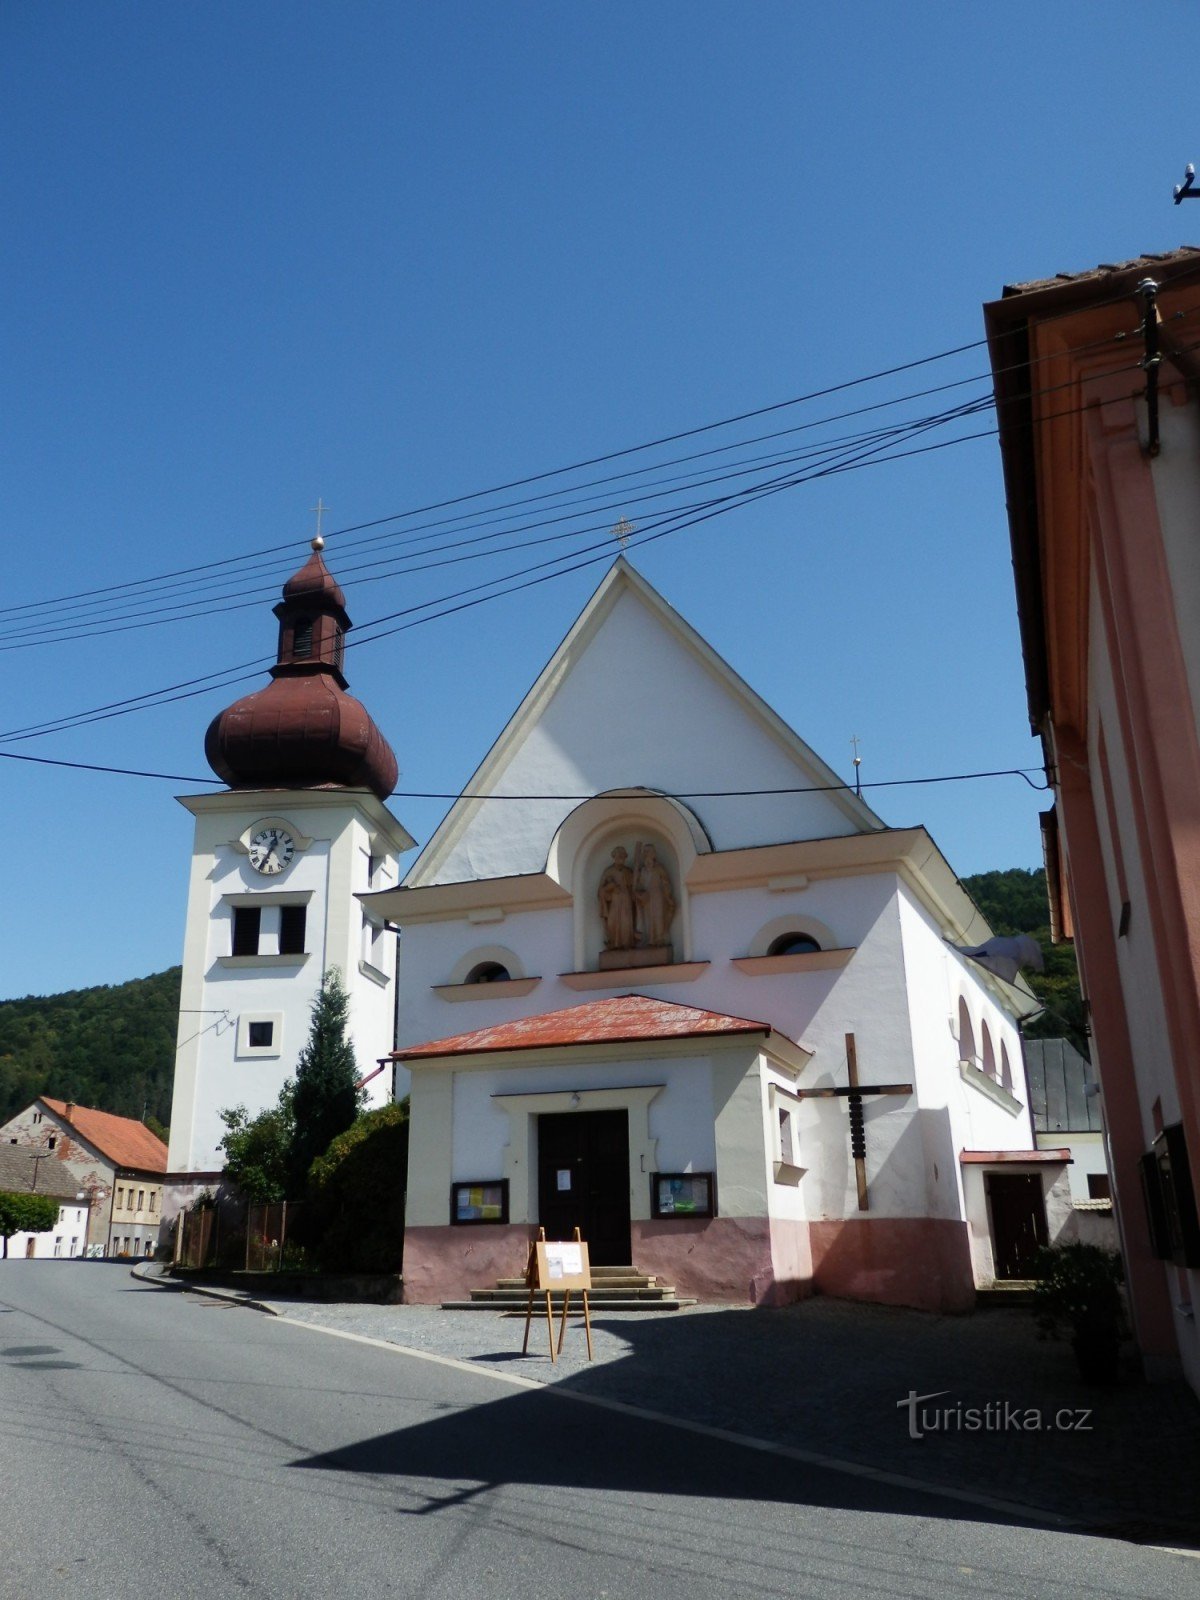 Церква св. Петра і Павла в Штепанові над Свраткою